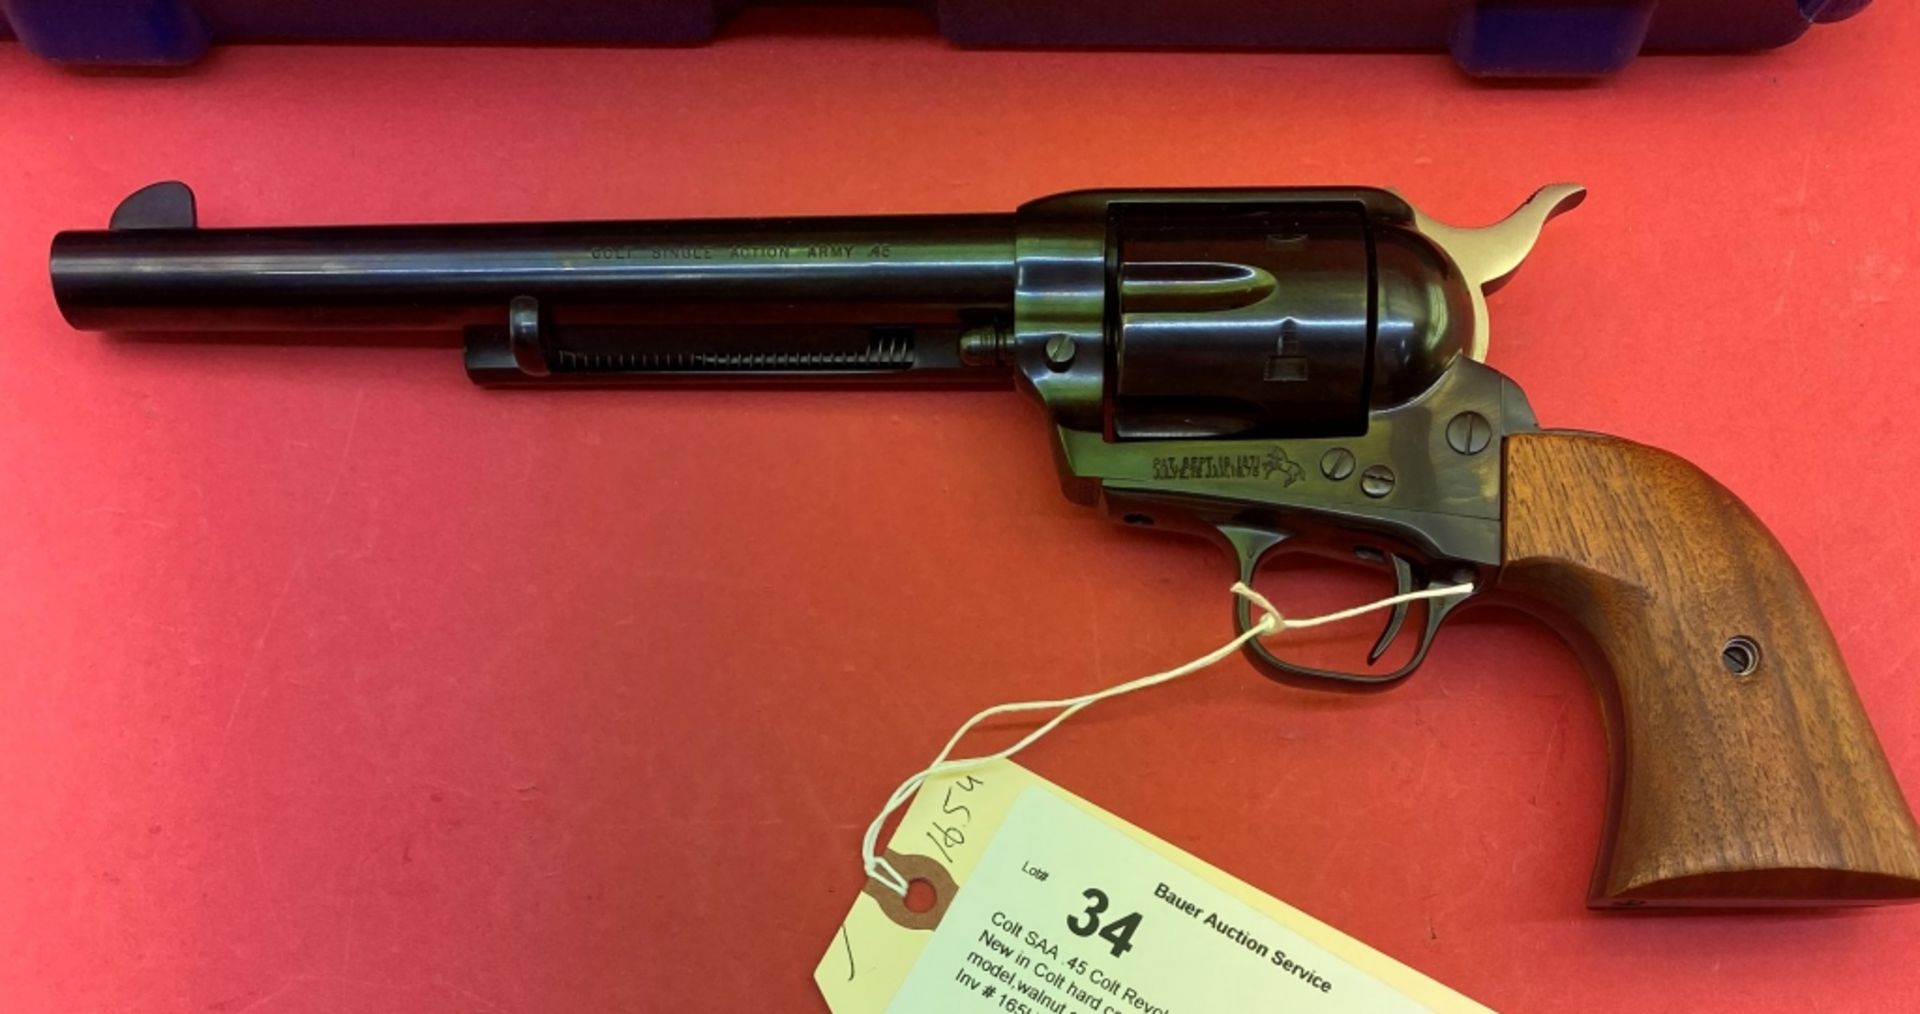 Colt Saa .45 Colt Revolver - Image 2 of 8